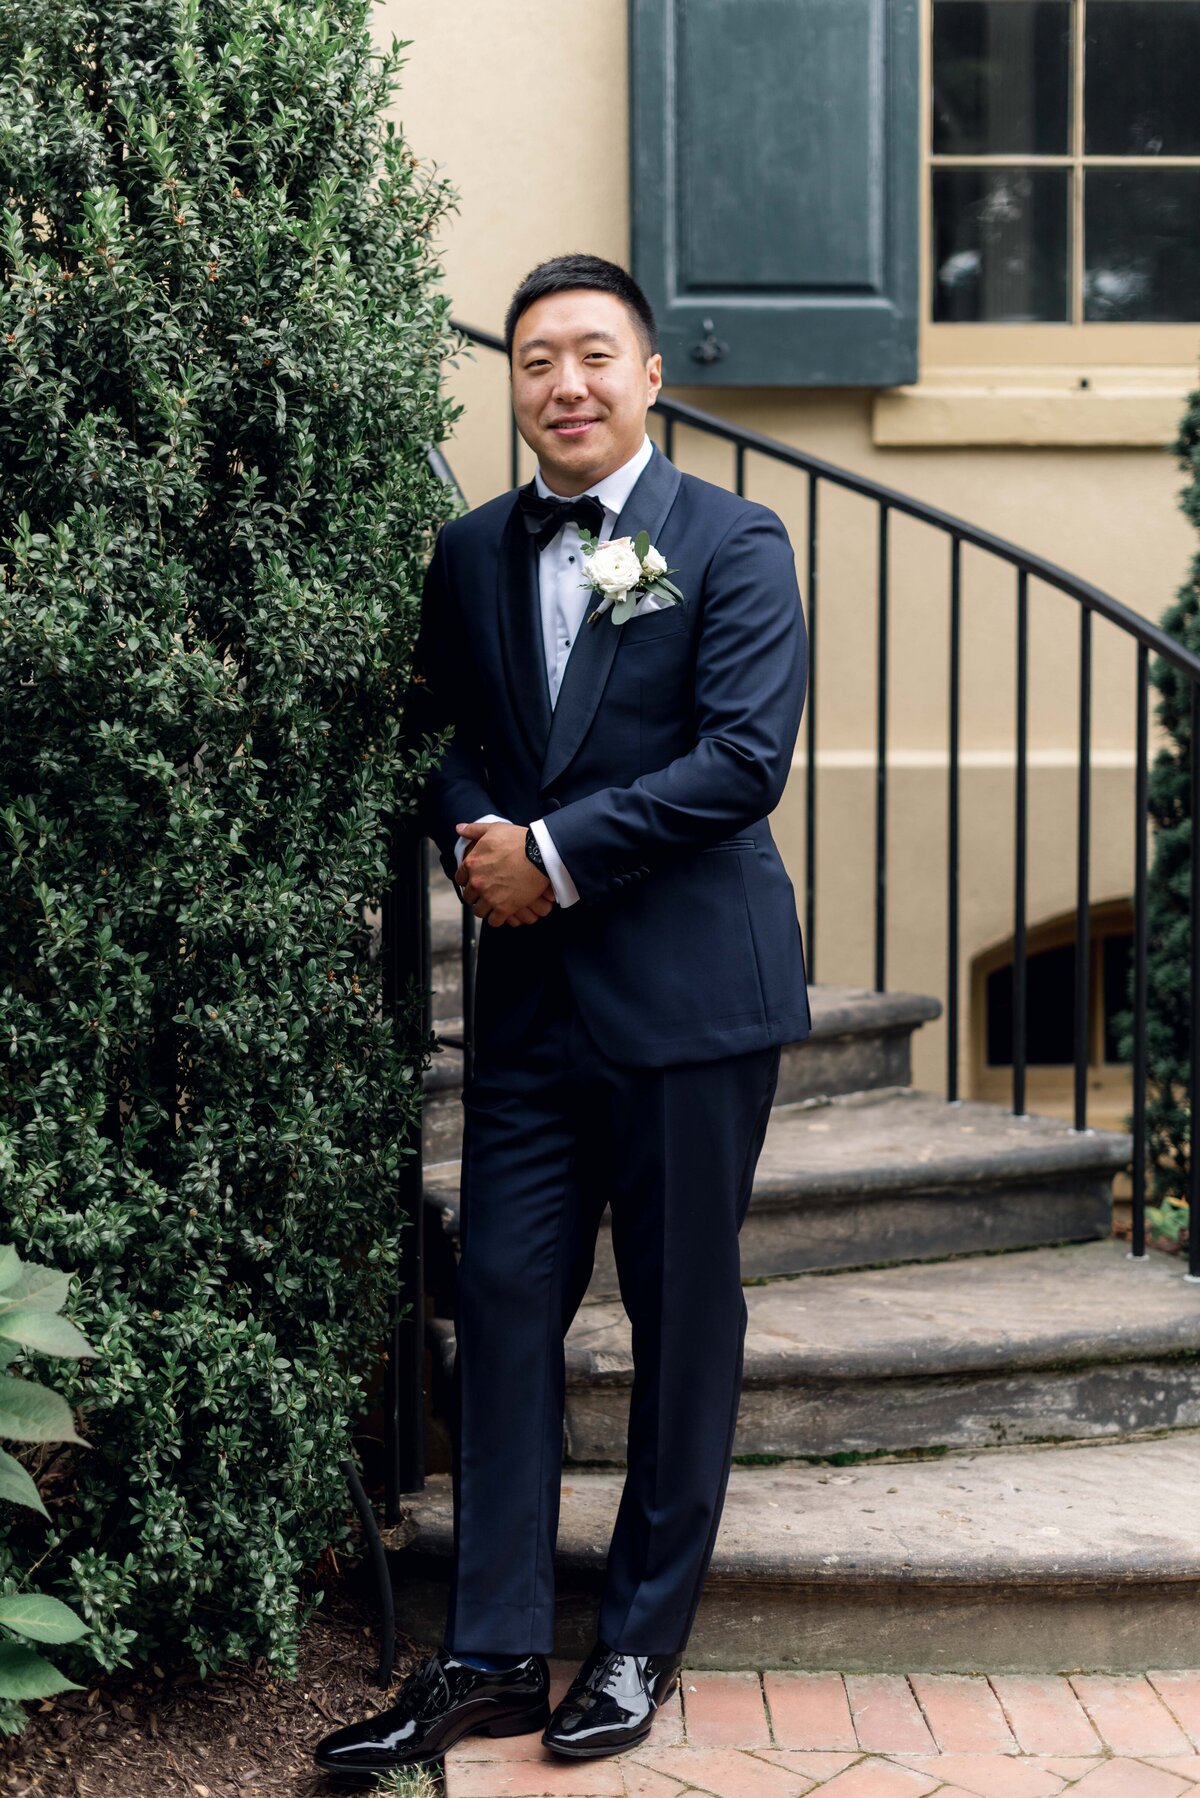 belmont-manor-wedding-baltimore-wedding-photographer-bailey-weddings-asian-american-wedding-karenadixon-2022-257